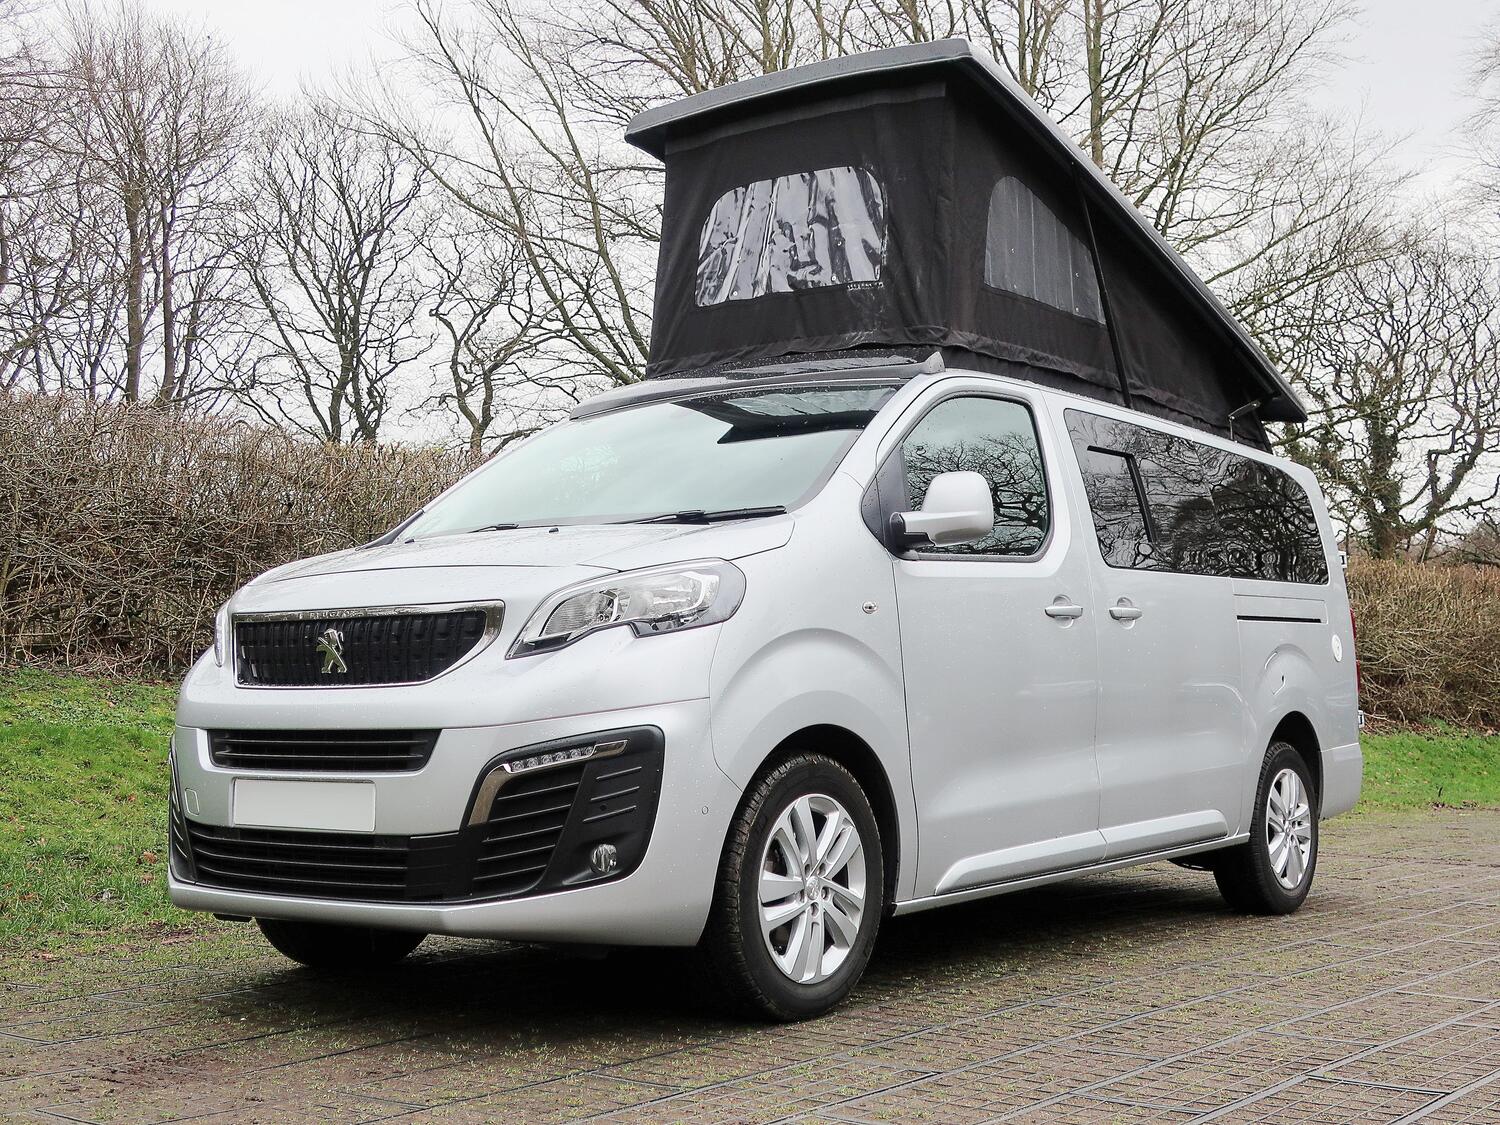 Peugeot-Expert-Long-Pro-4-BerthTravelling-Campervan- Front-Nearside-Angle-Pop-Top-Roof-Open